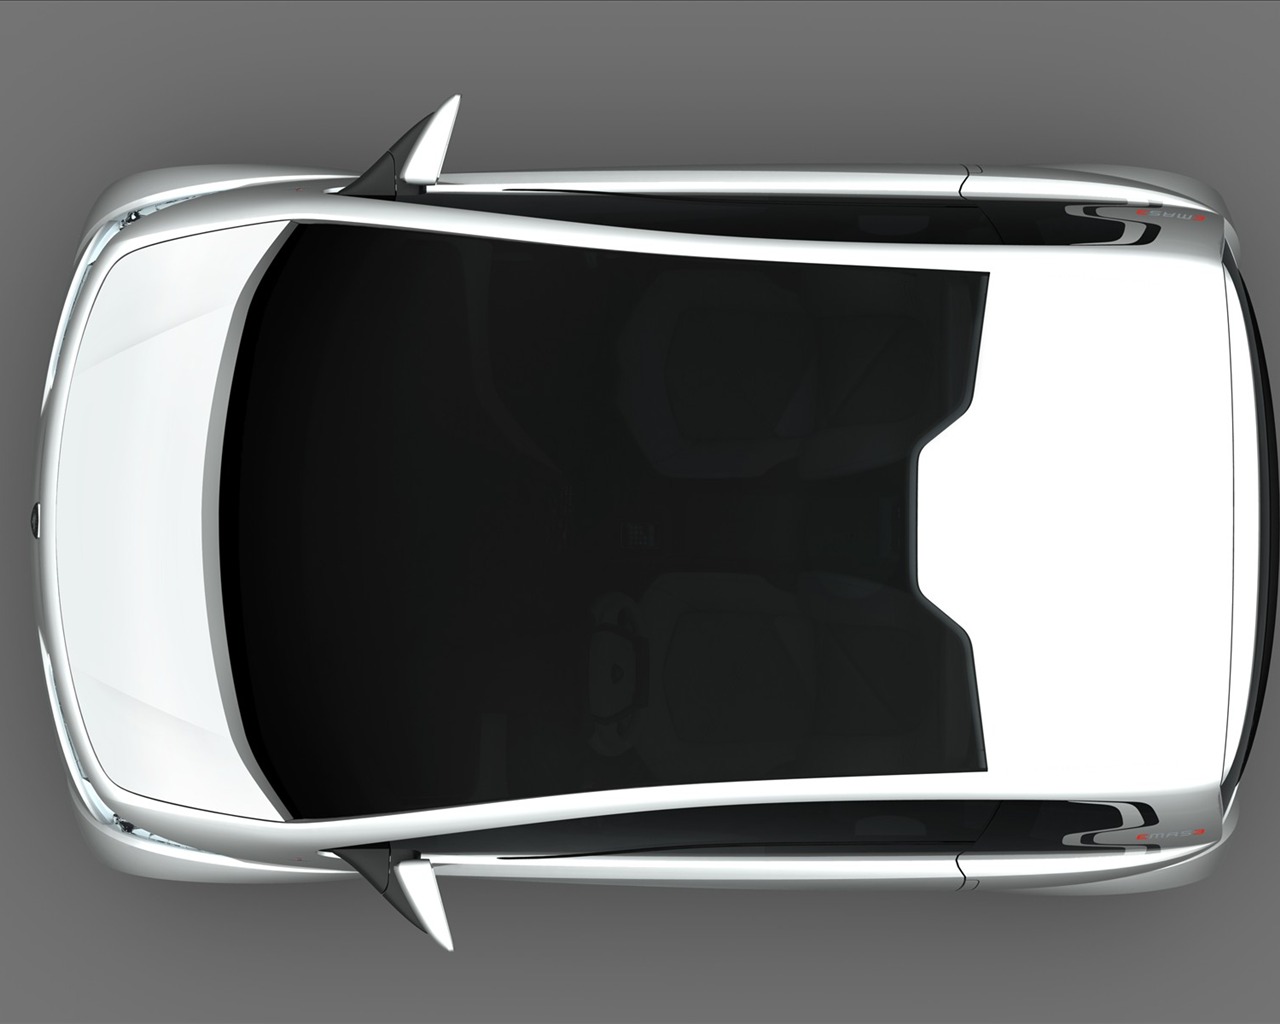 édition spéciale de concept cars fond d'écran (8) #17 - 1280x1024